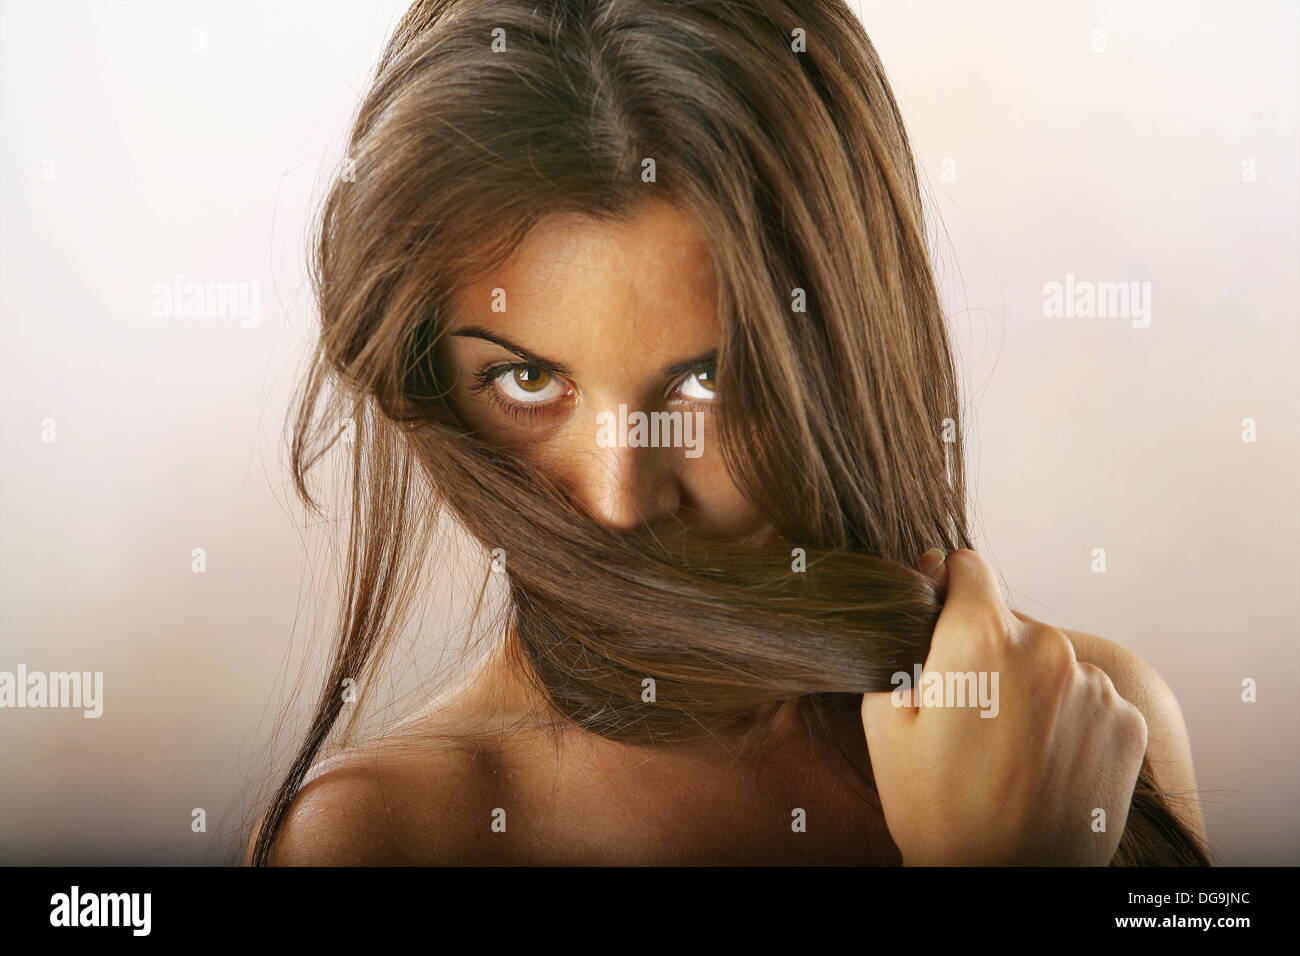 Foto de estudio de chica que cubre su rostro con su largo cabello. Foto de stock